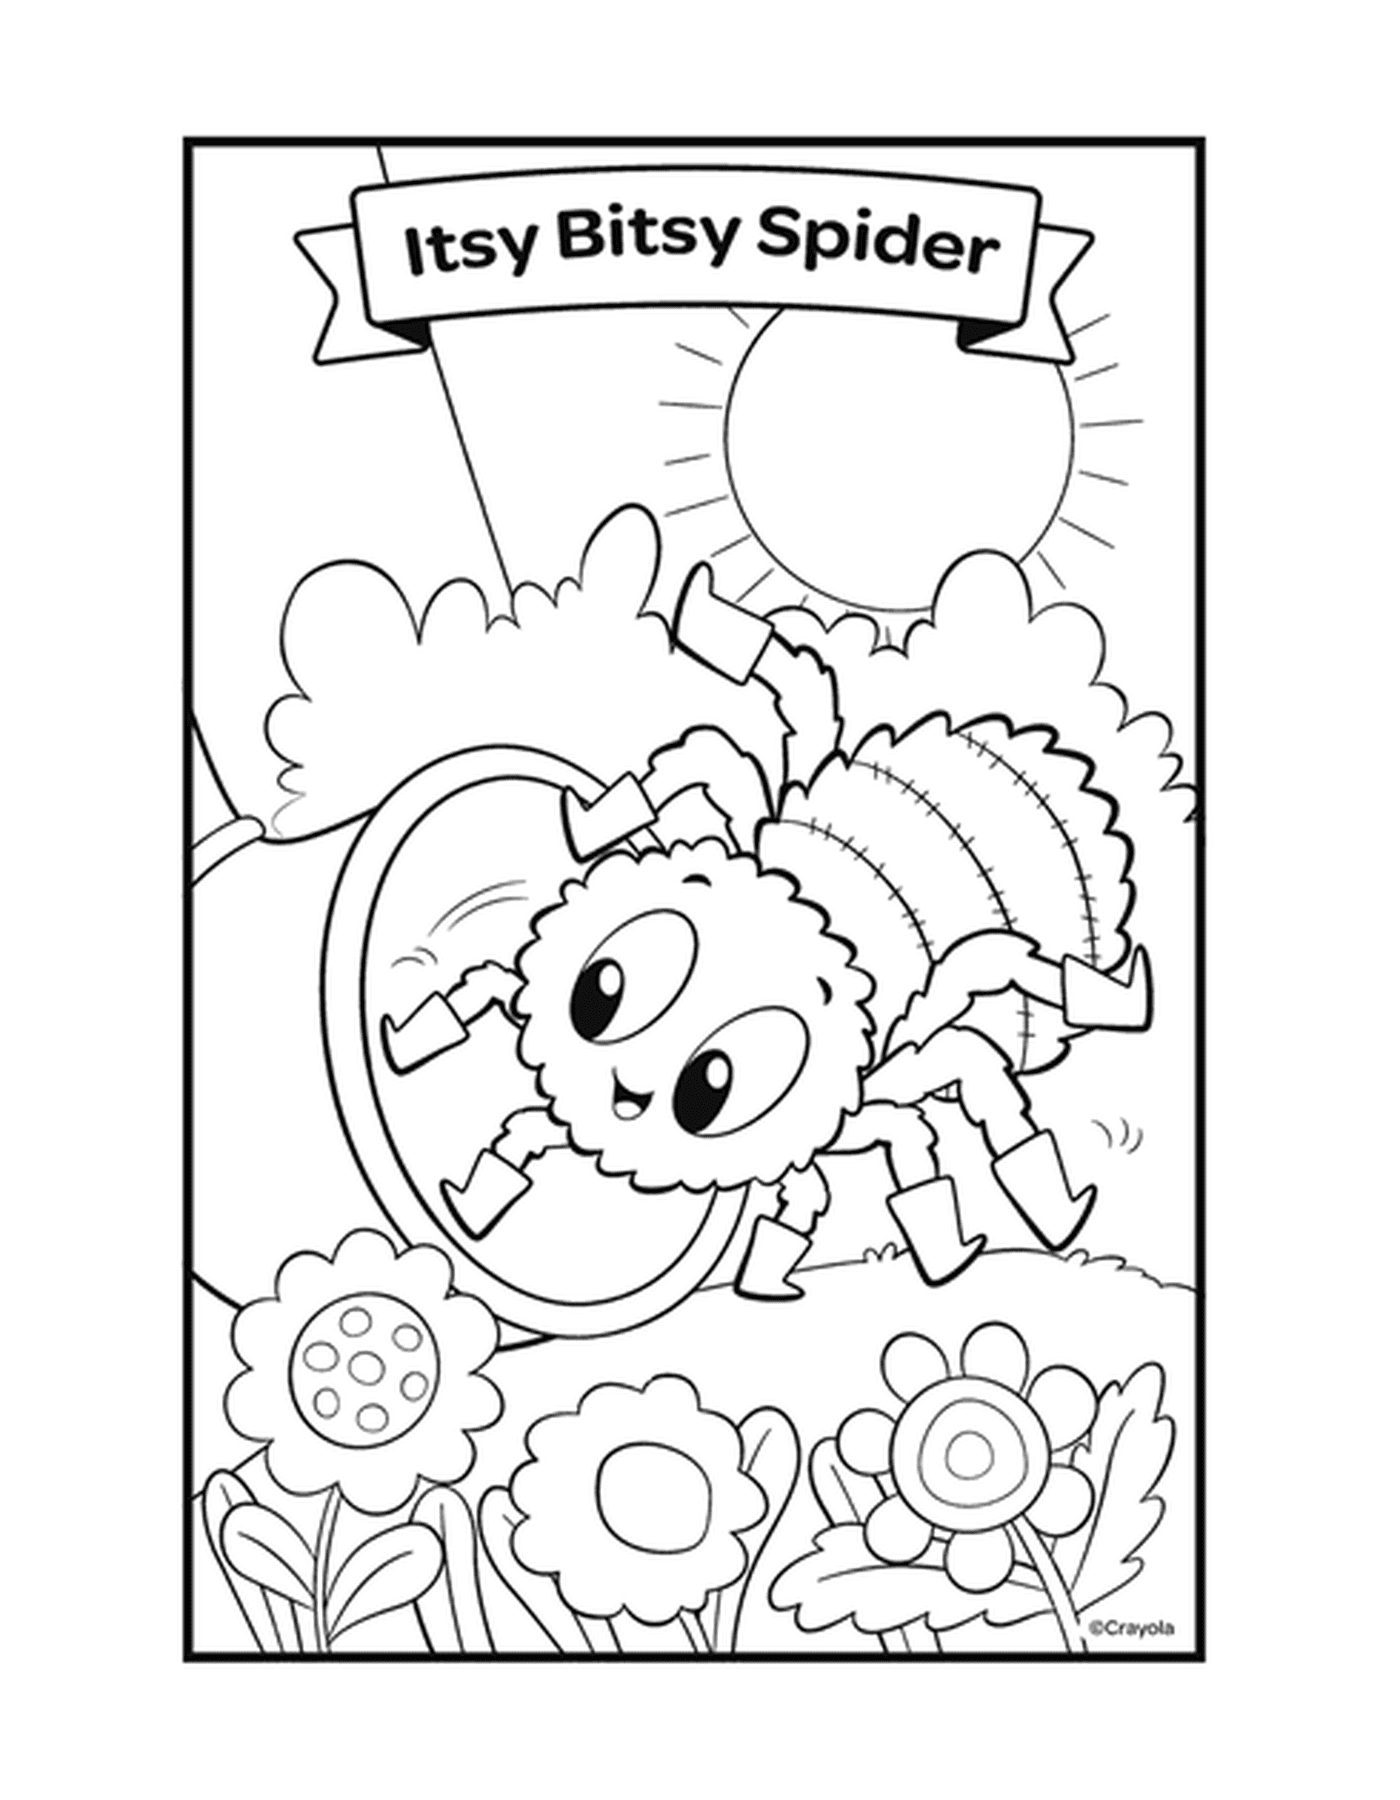  Der Itsy Bitsy Spider reimt sich mit einer Spinne auf einem Netz 